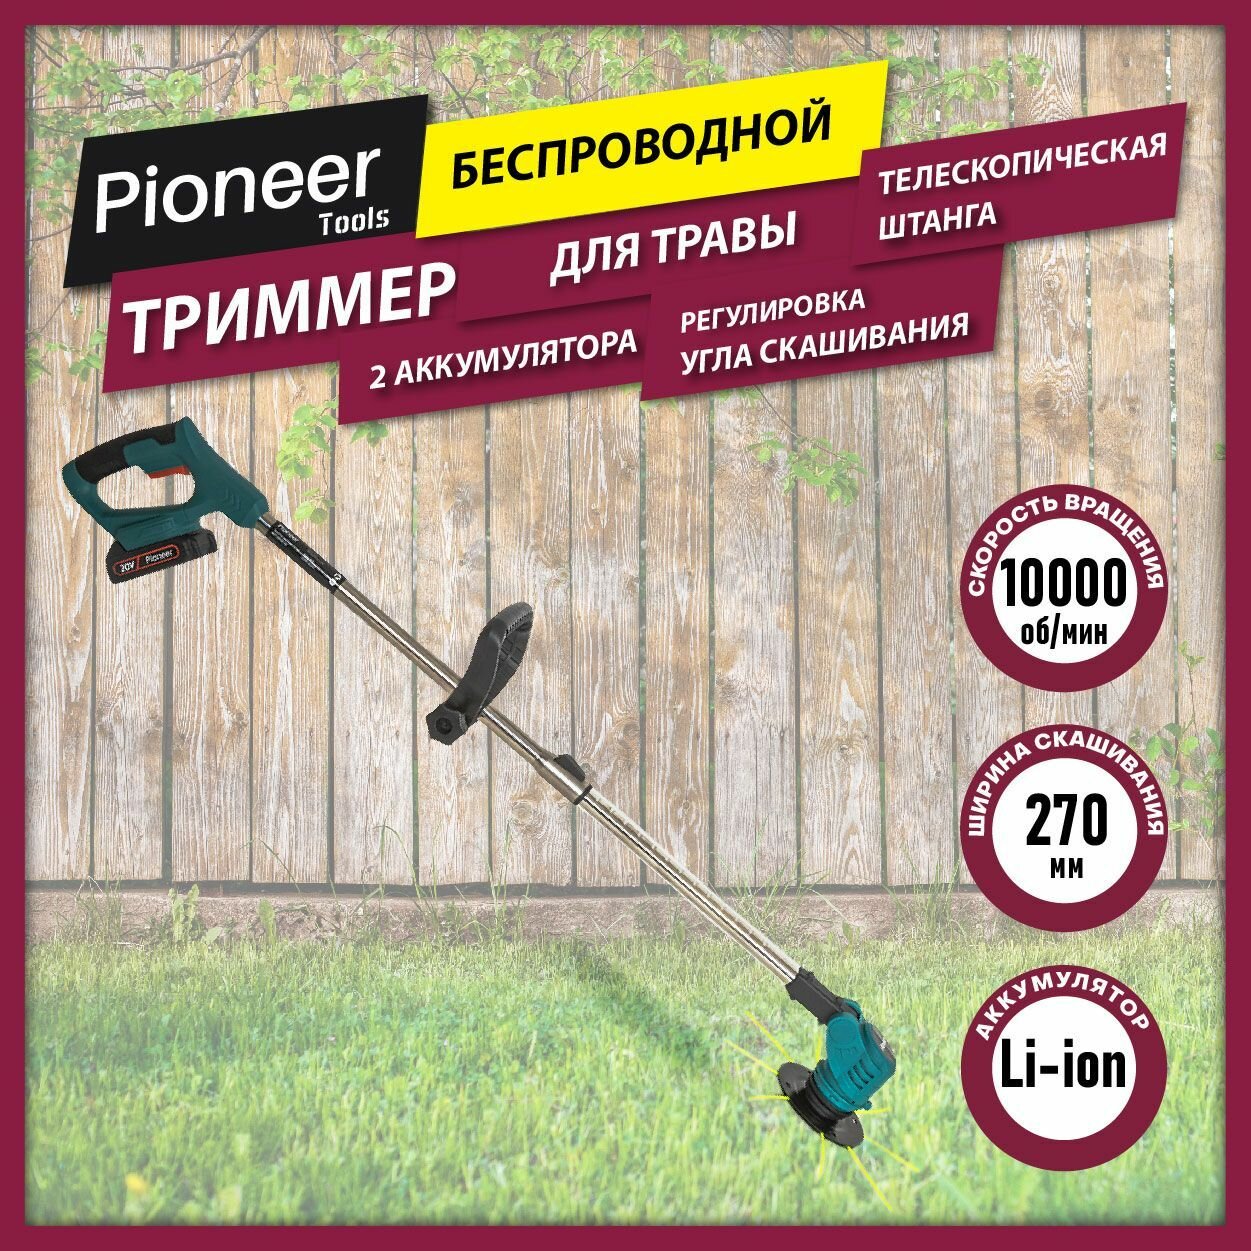 Триммер аккумуляторный Pioneer для травы с телескопической штангой и рукоятка Anti-Slip защита от случайного включения 2 аккумулятора в комплекте